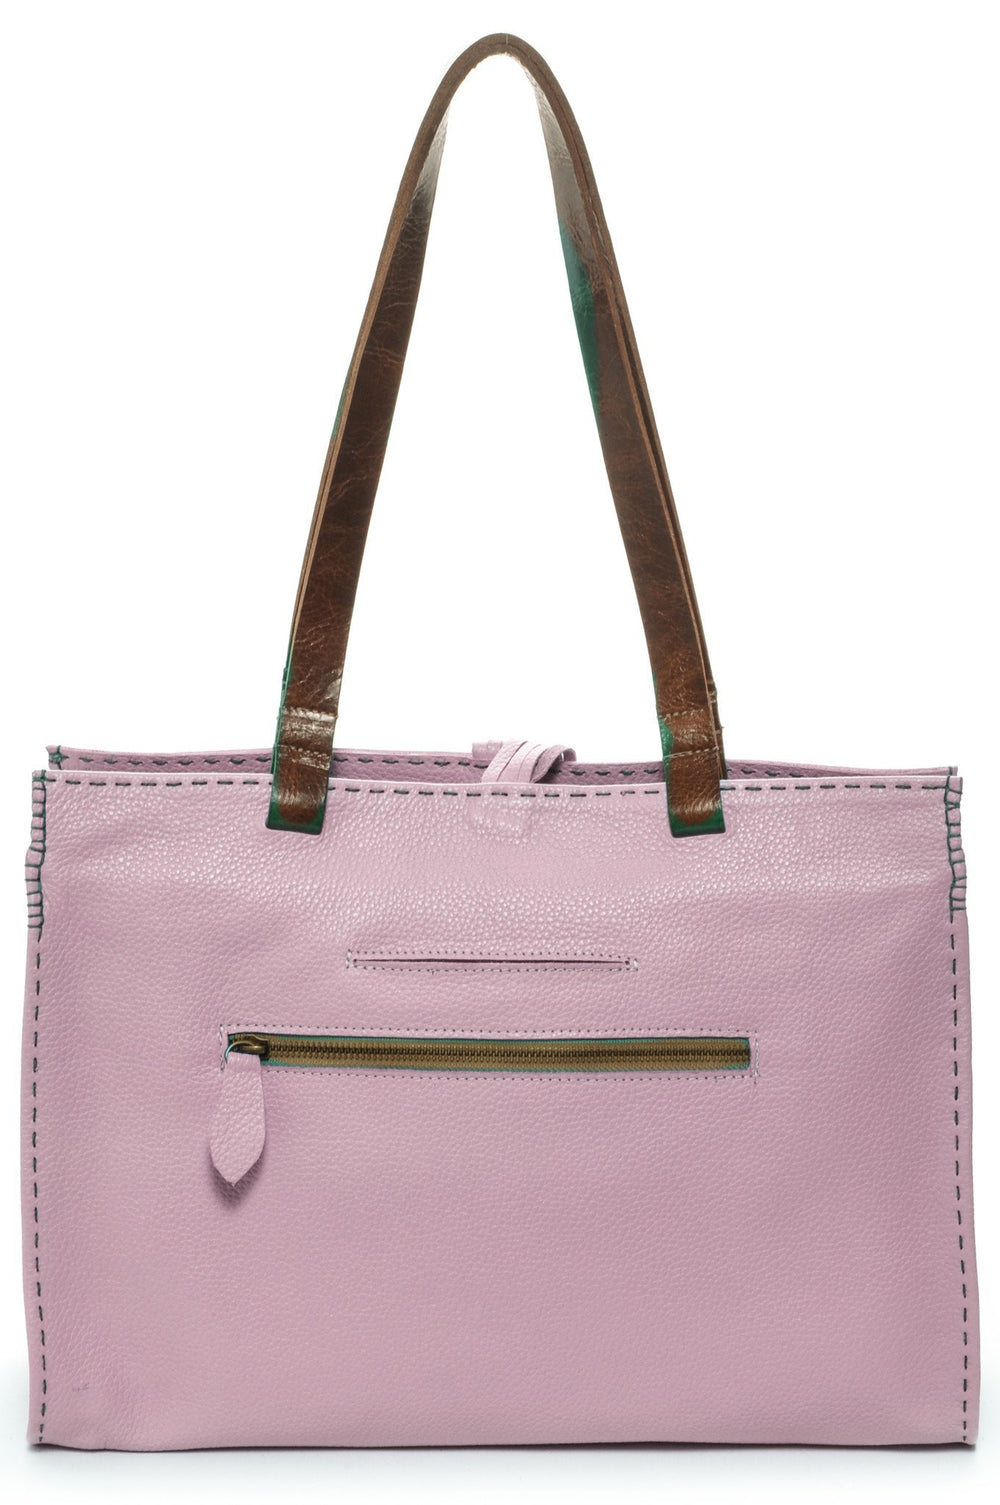 CARMEL Baby Pink - Carla Mancini Handbags